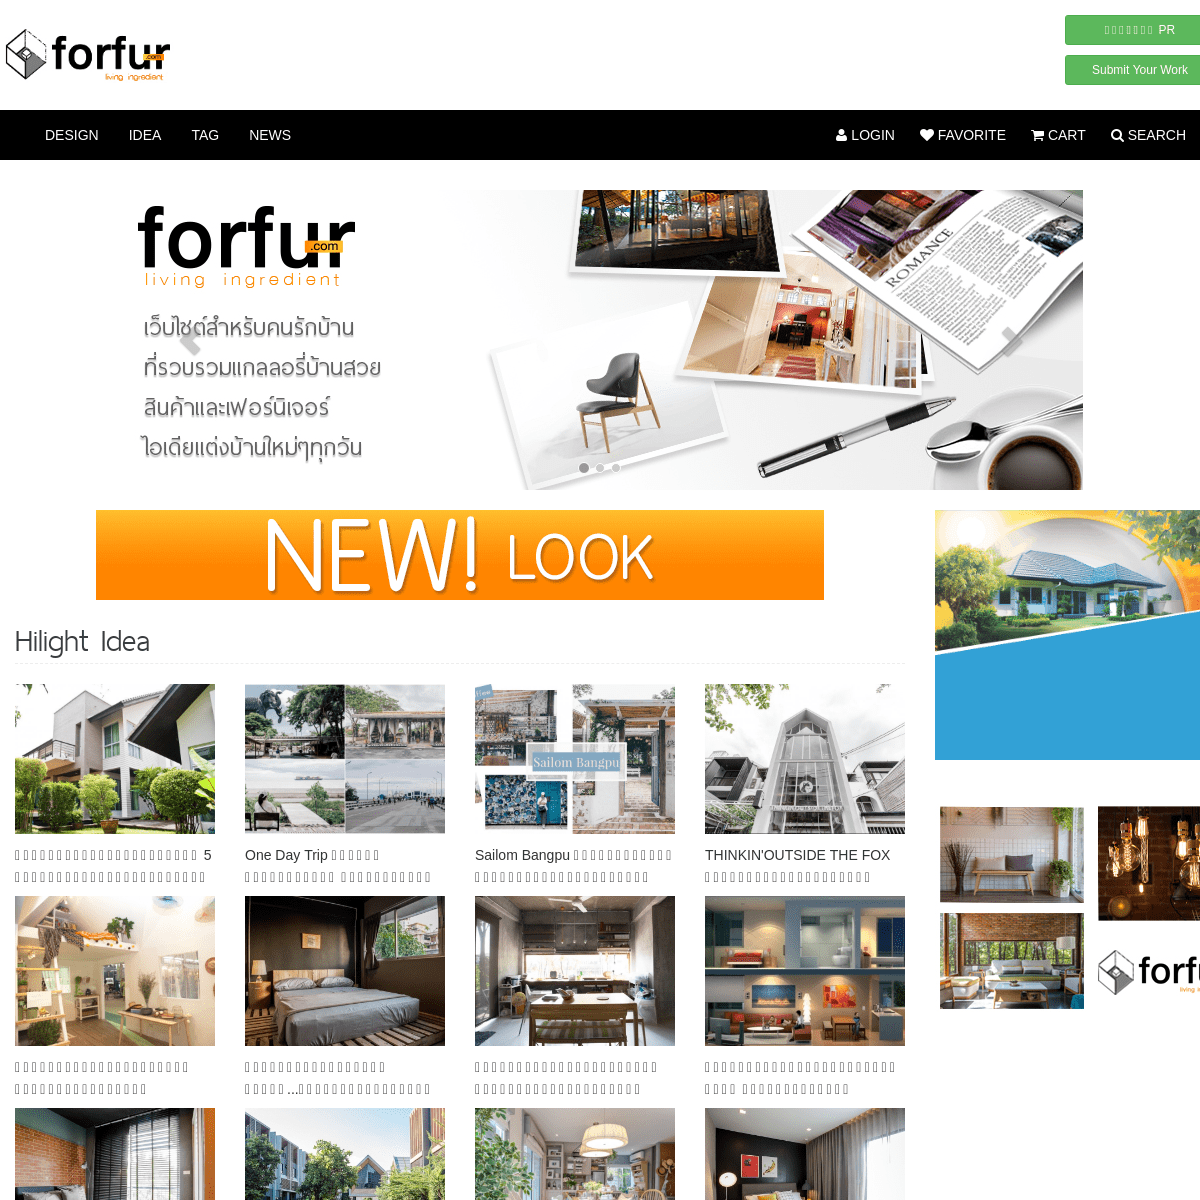 A complete backup of forfur.com